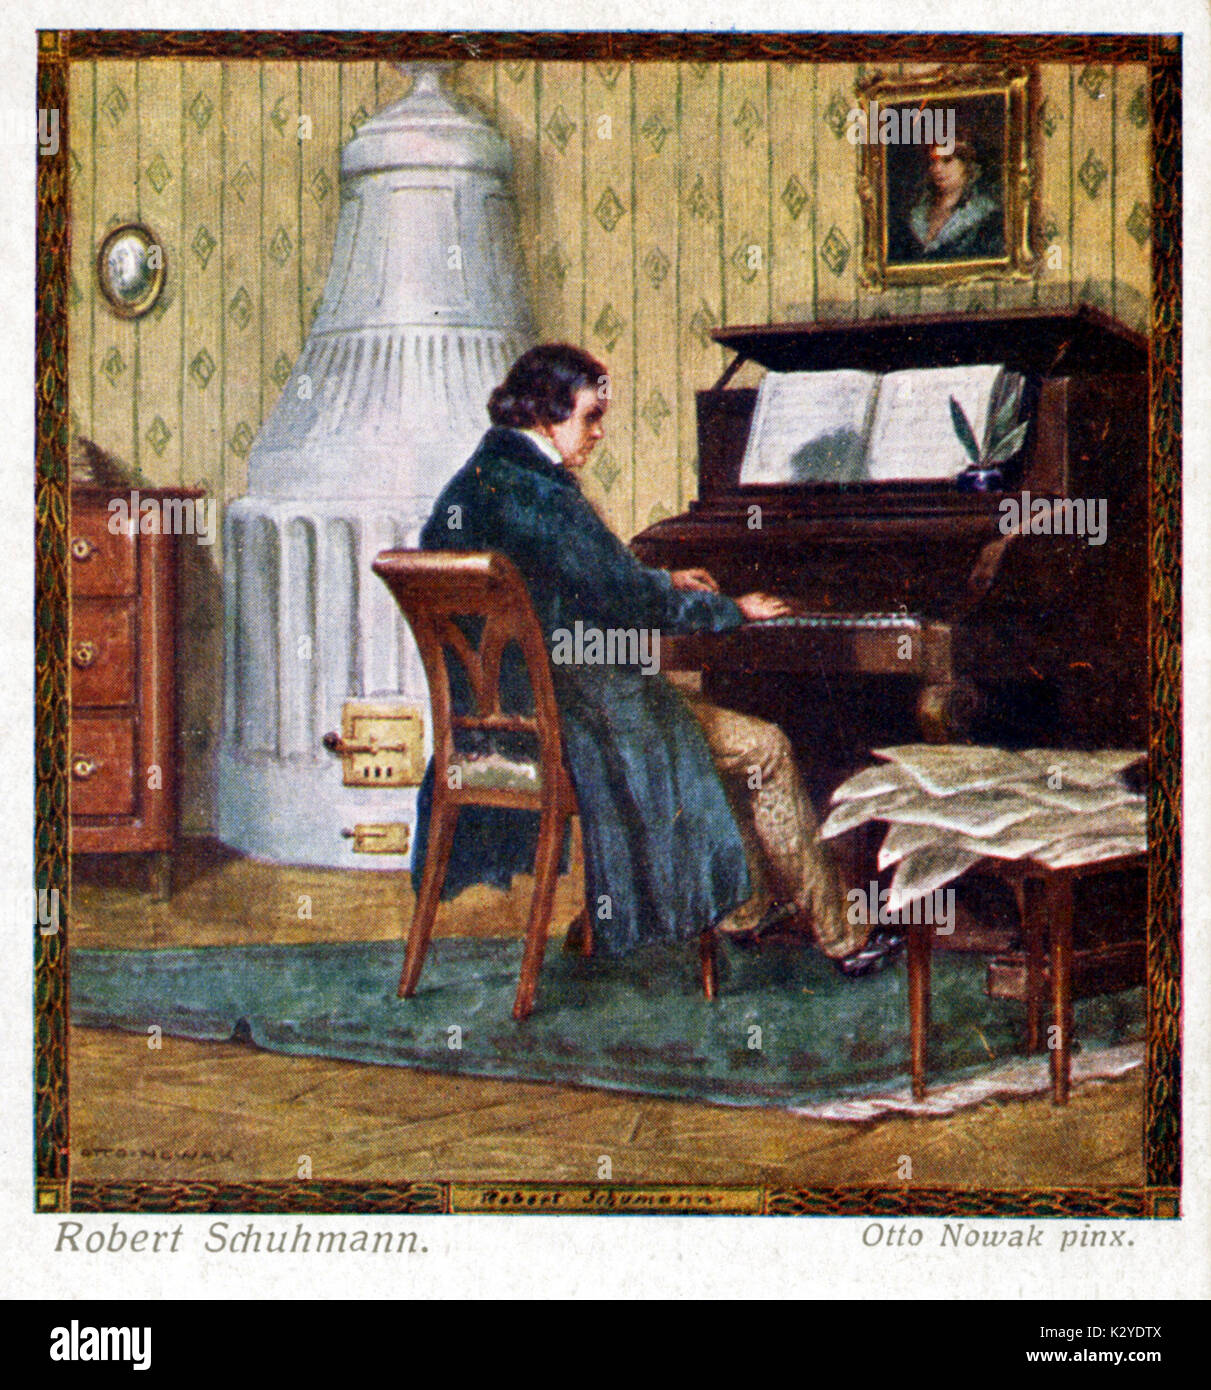 Robert Schumann, la composition au piano. Compositeur allemand, 1810-1856  Photo Stock - Alamy